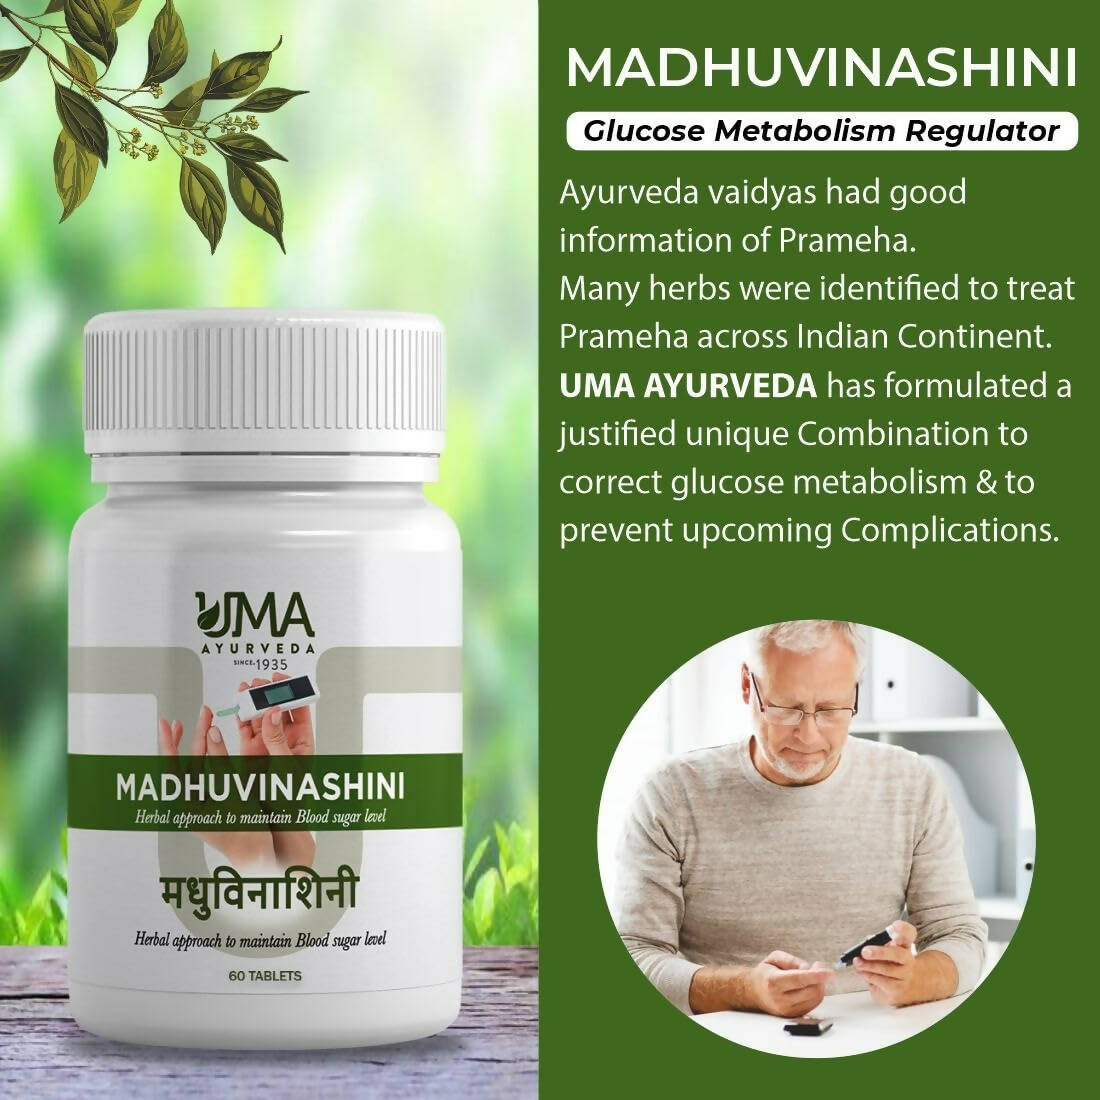 Uma Ayurveda Madhuvinashini Tablets - Distacart